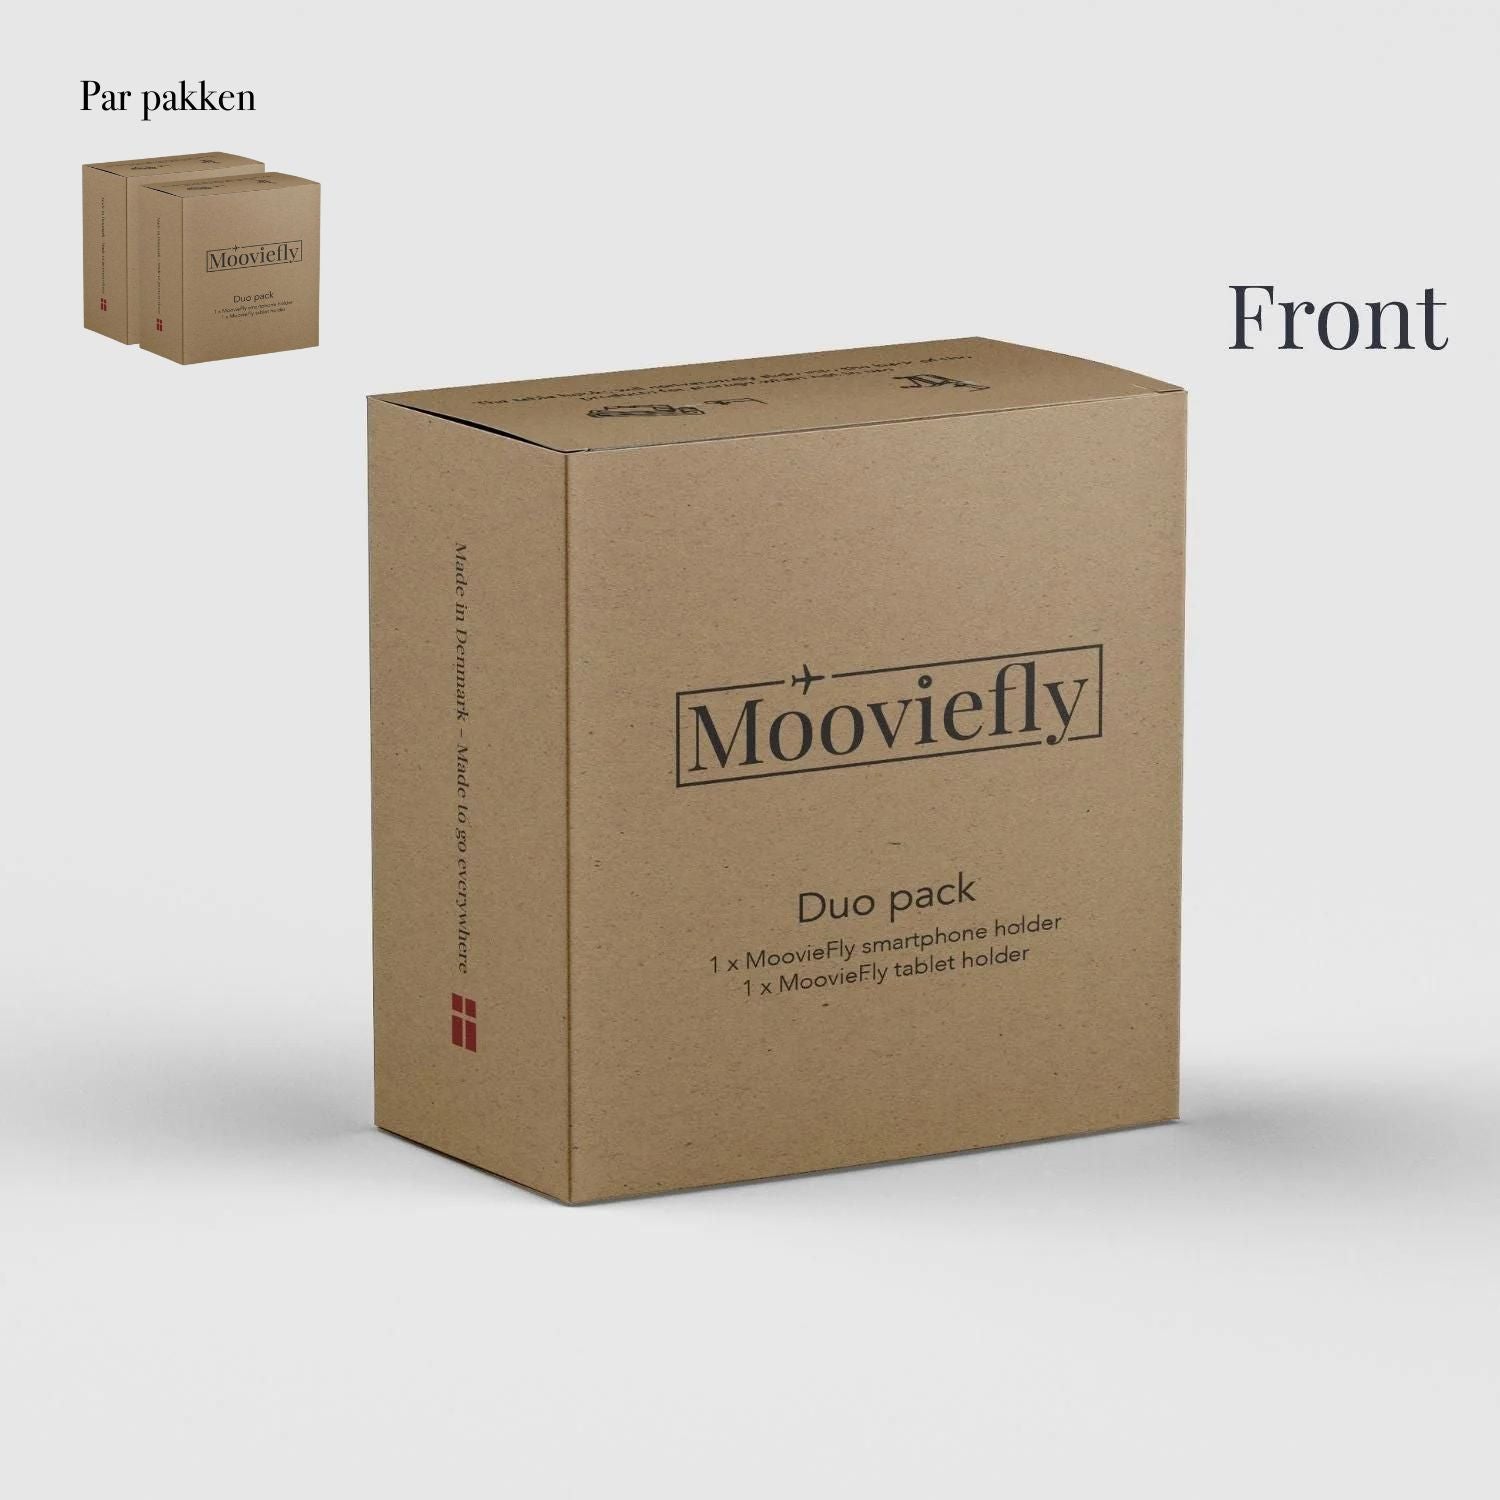 Billede af MoovieFly par pakken - To tablet og to smartphone holdere hos Mooviefly.dk